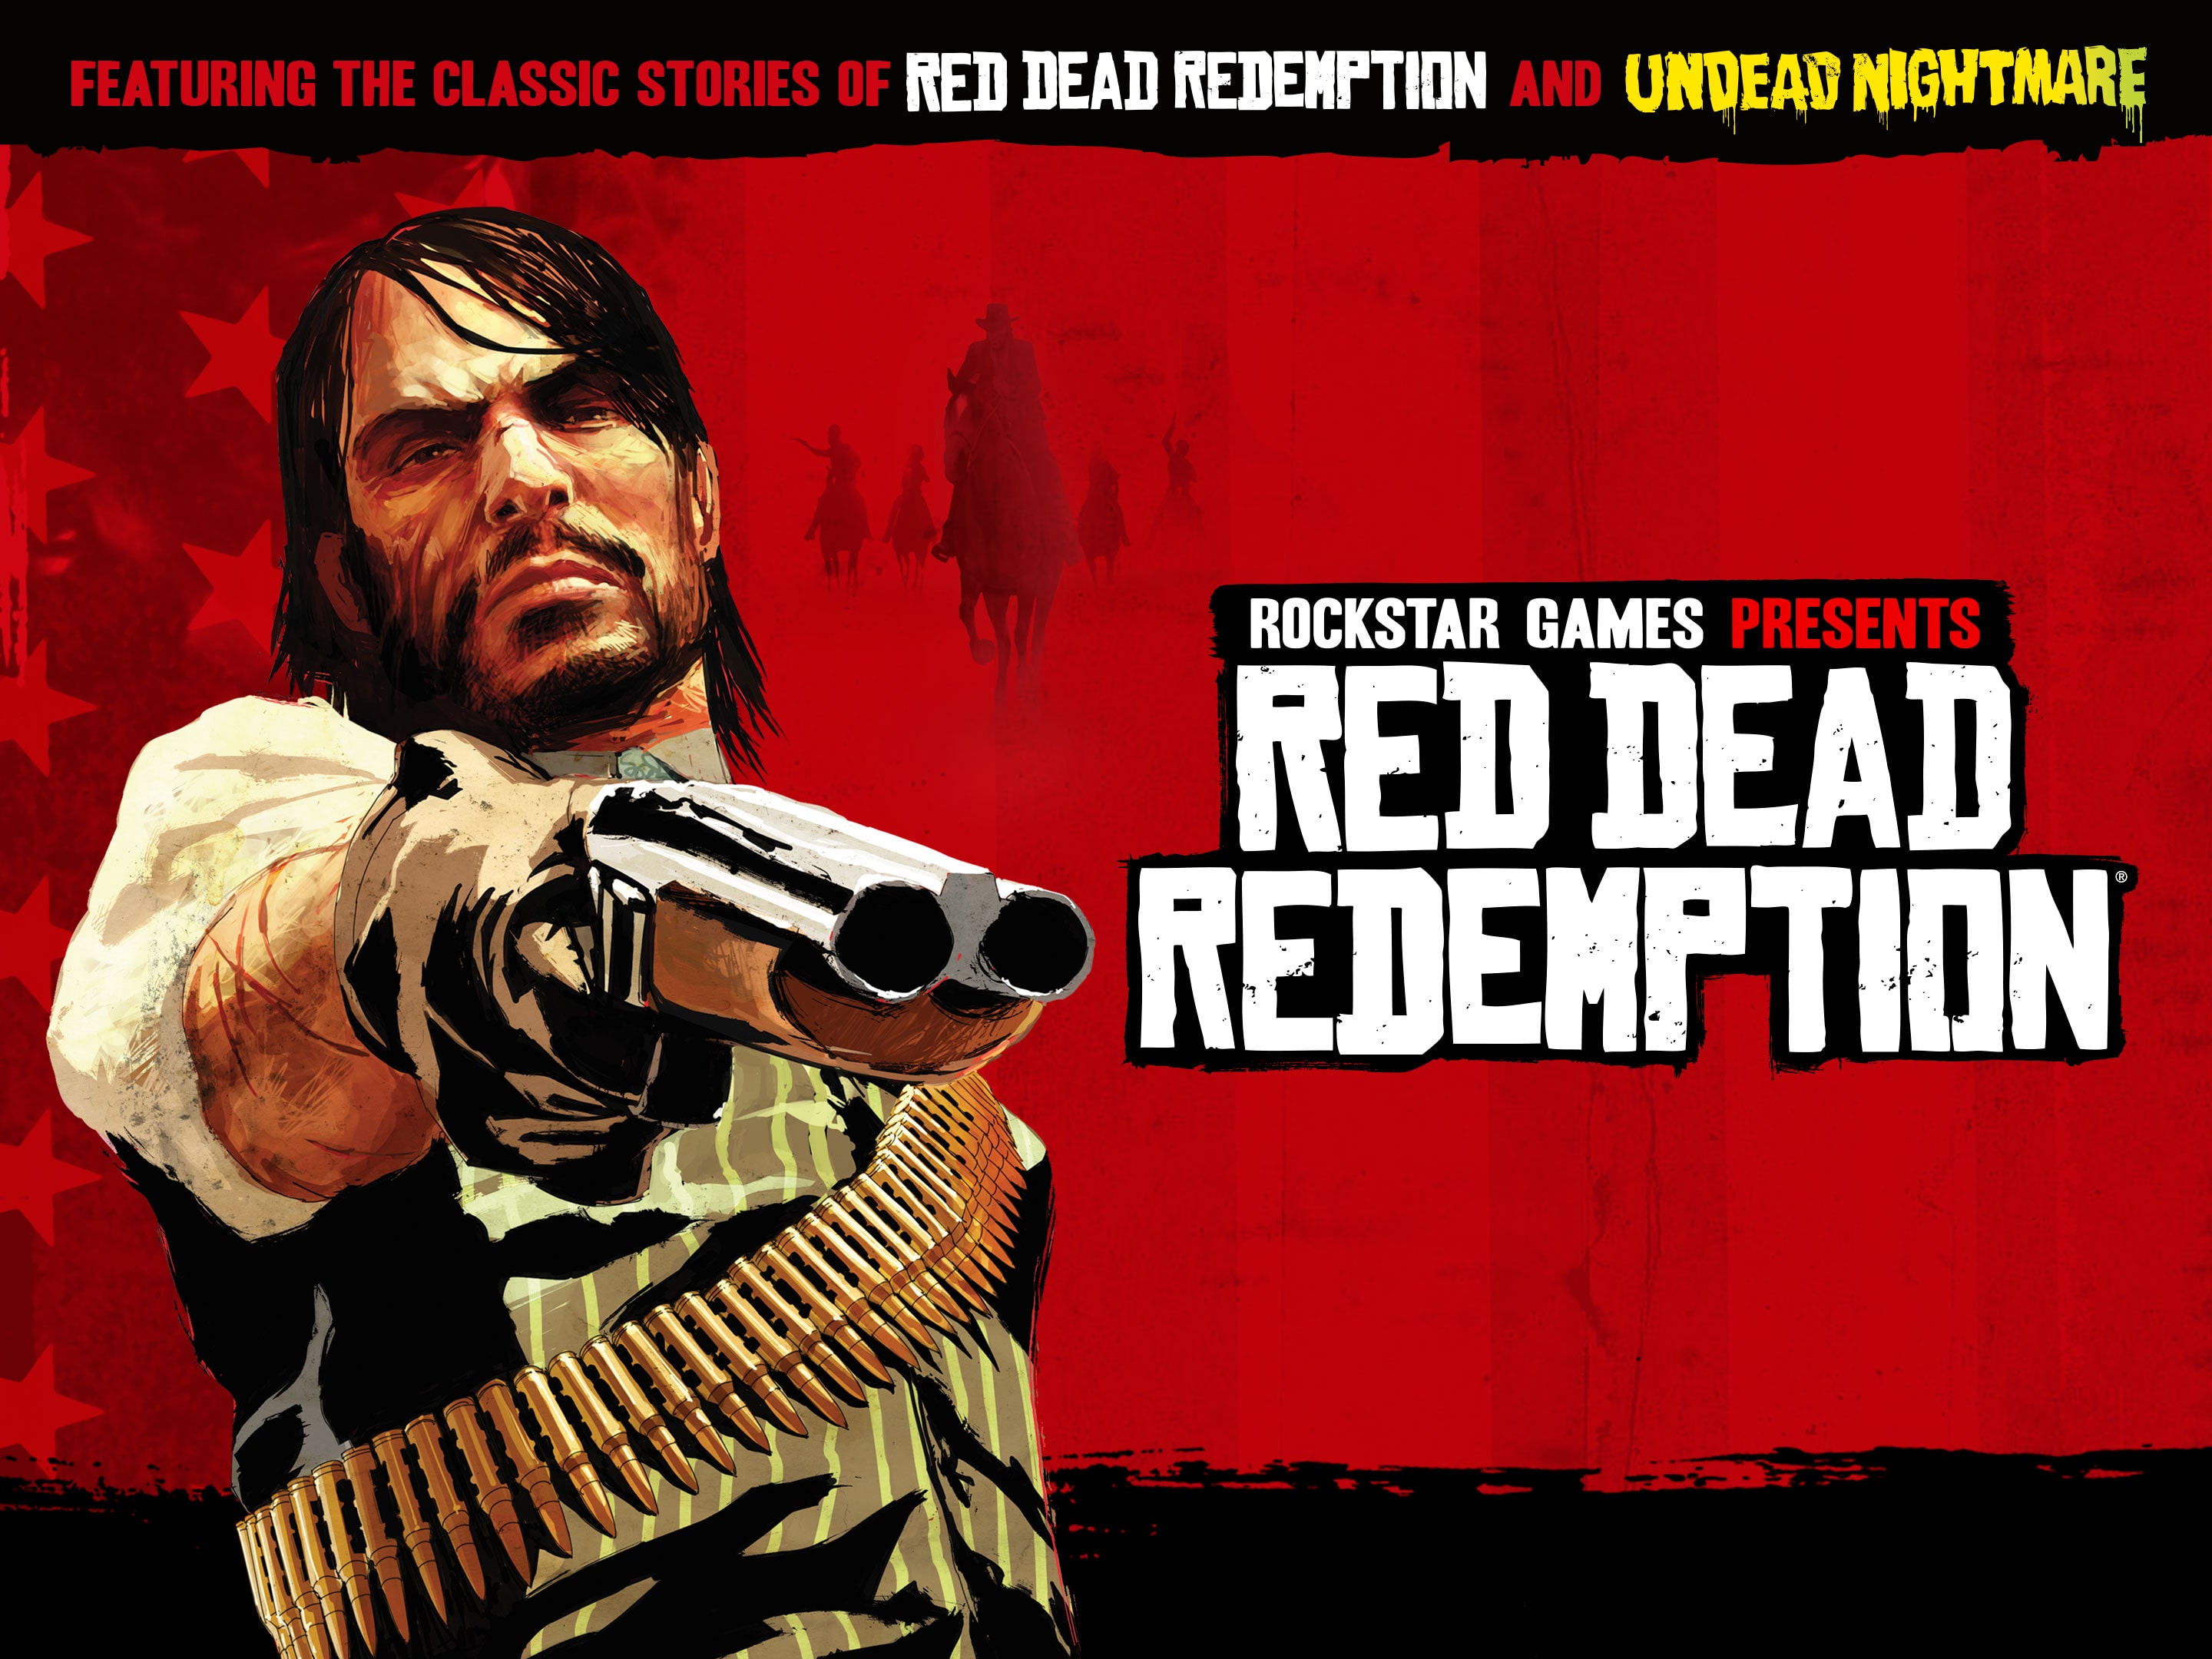 Red Dead Redemption é um dos mais buscados na PS Store